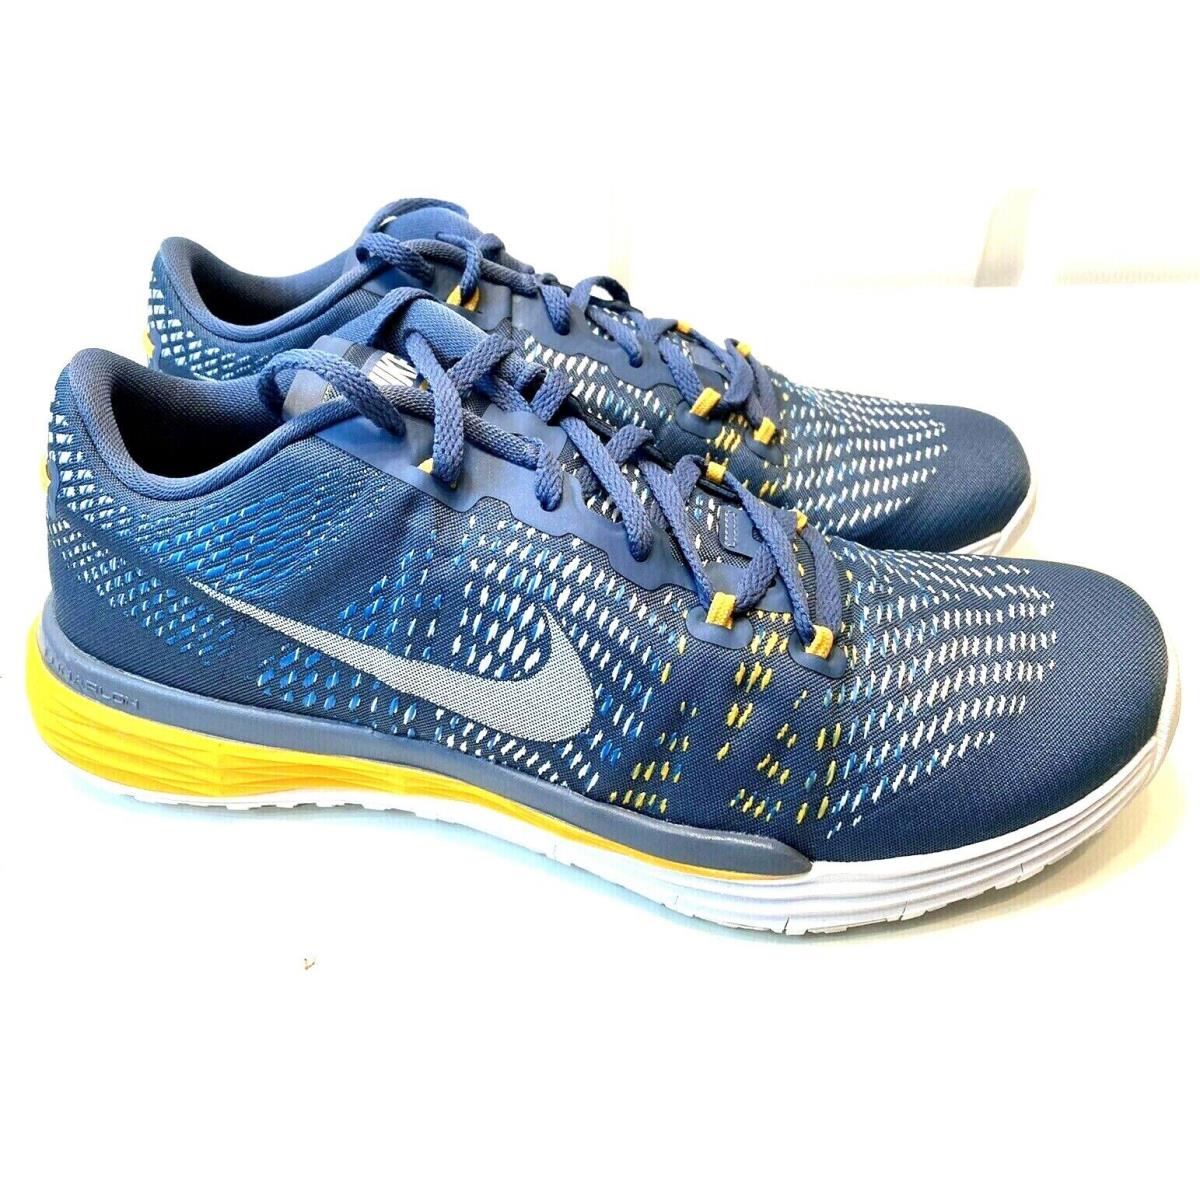 Nike Lunar Caldra Ocean Mens Size 7 or 8.5 Lace Up Road Running Jogging Sneaker